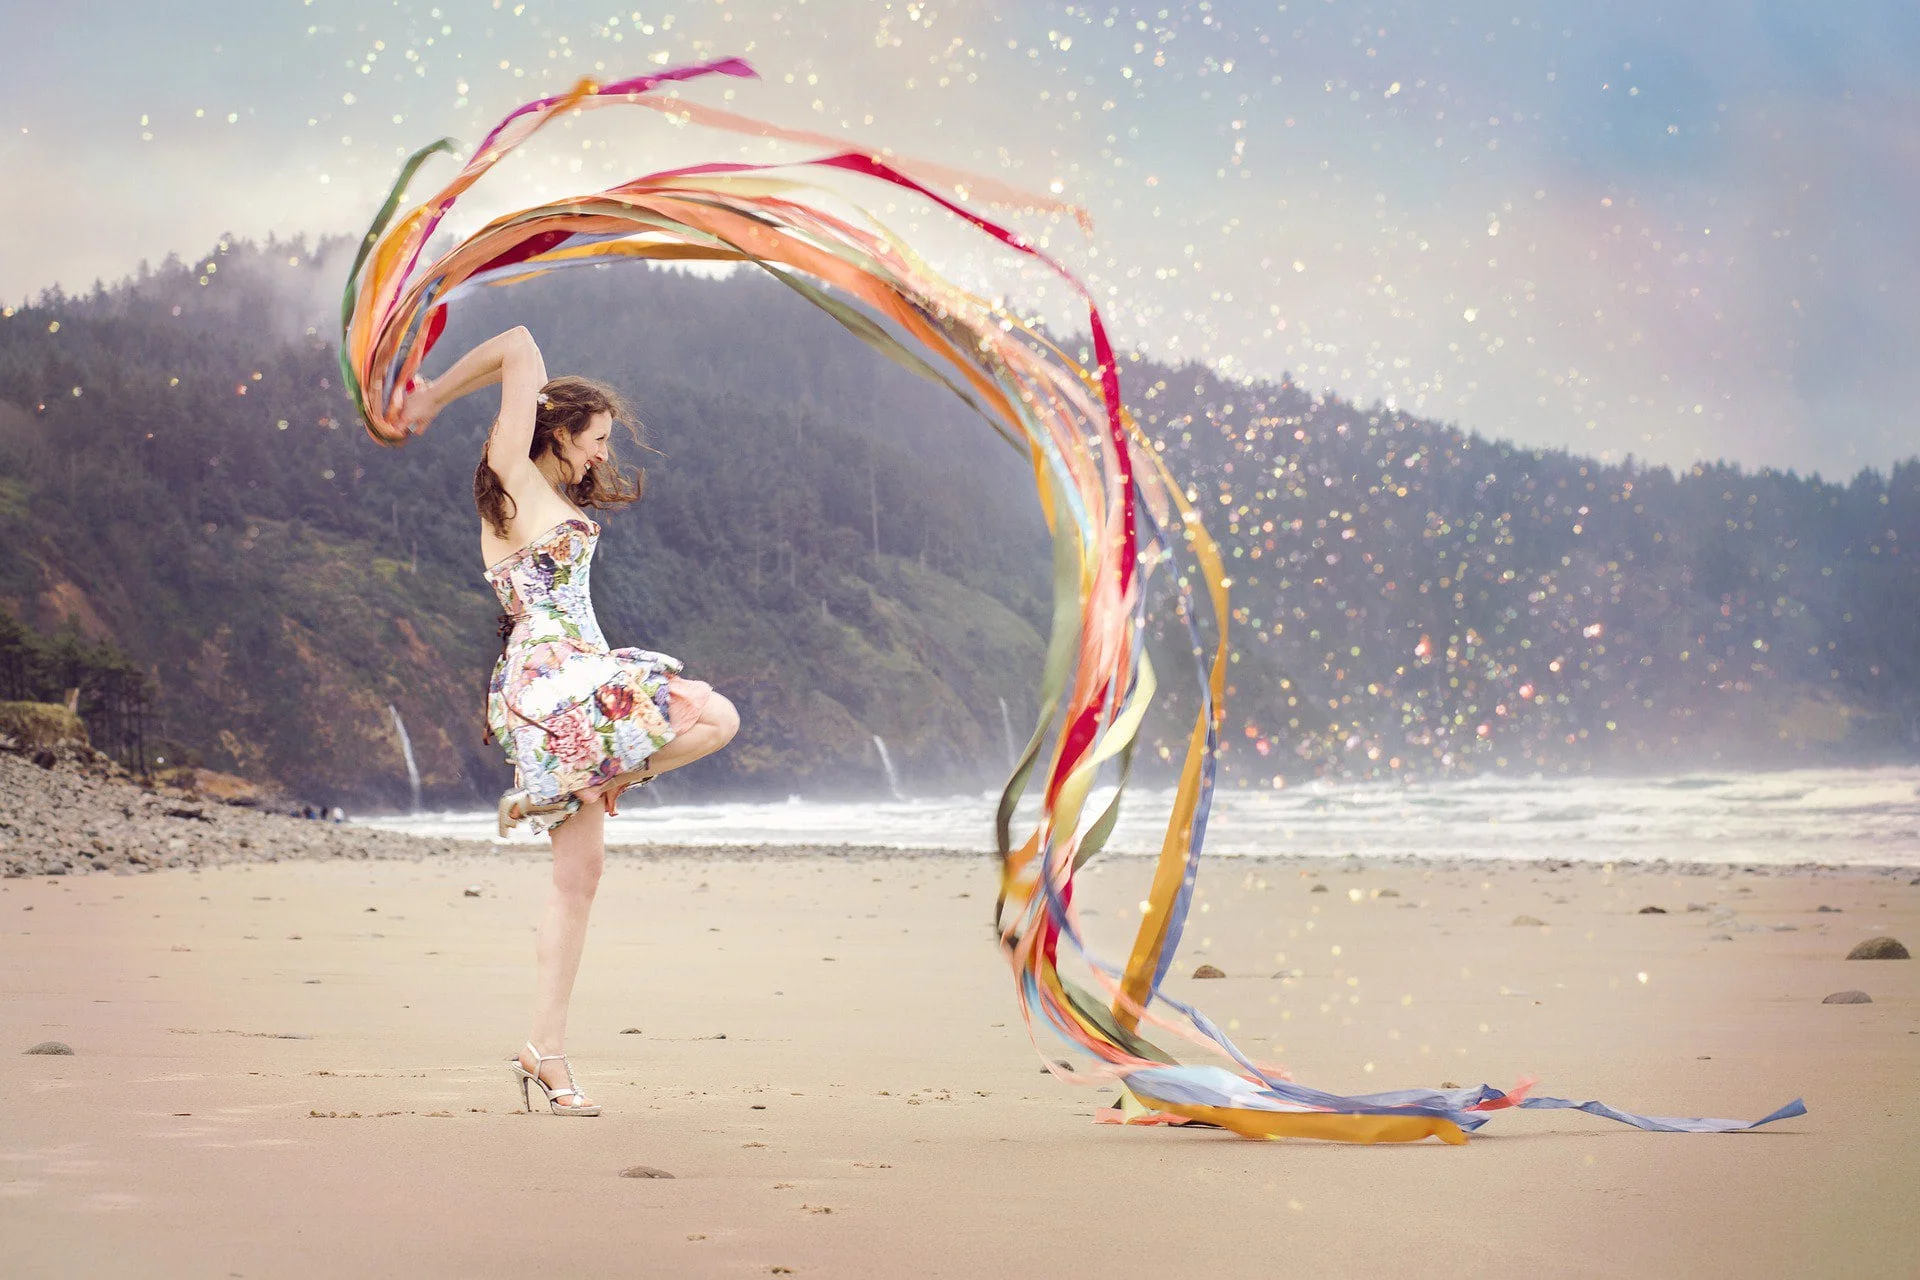 Eine Frau tanzt am Strand, umgeben von lebhaften, wirbelnden Bändern, die im Wind flattern. Diese Szene verkörpert Offenheit und Selbstfindung, eingefangen in einem Moment der Freiheit und des Einklangs mit der Natur, symbolisch für die Reise zu innerem Frieden und persönlicher Entfaltung.